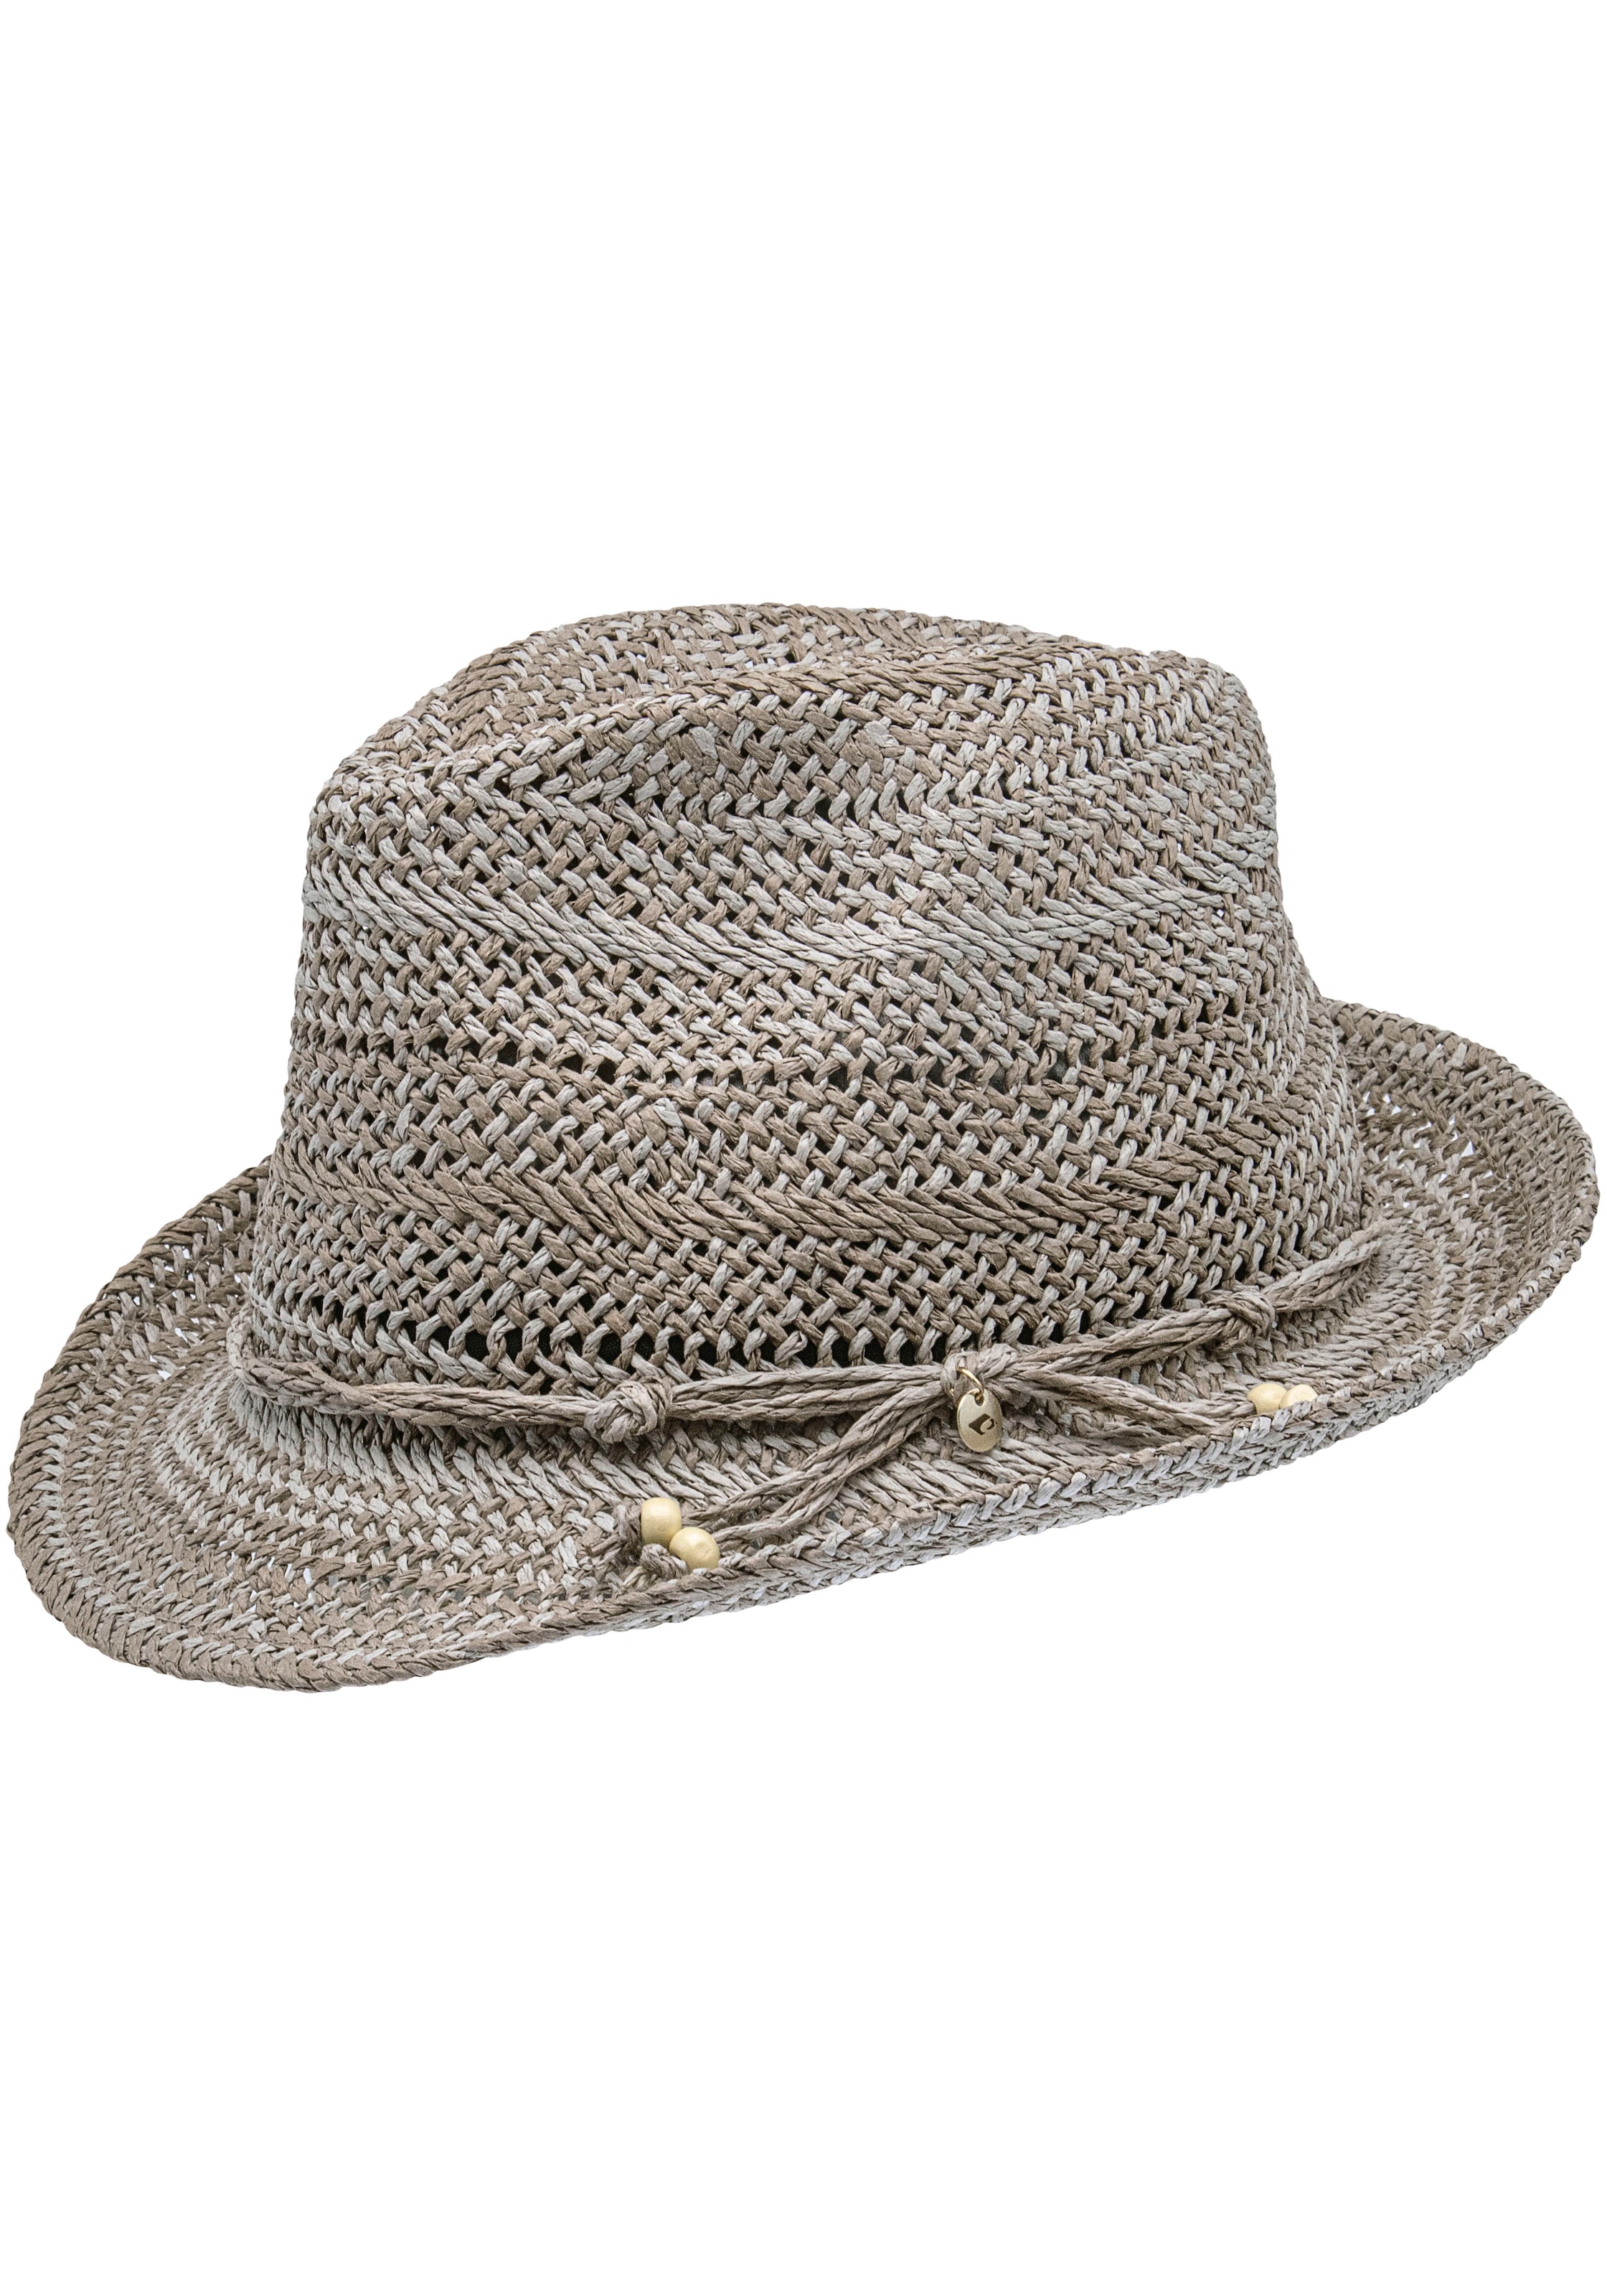 Hüte online kaufen jetzt Hut Trendy auf | shoppen